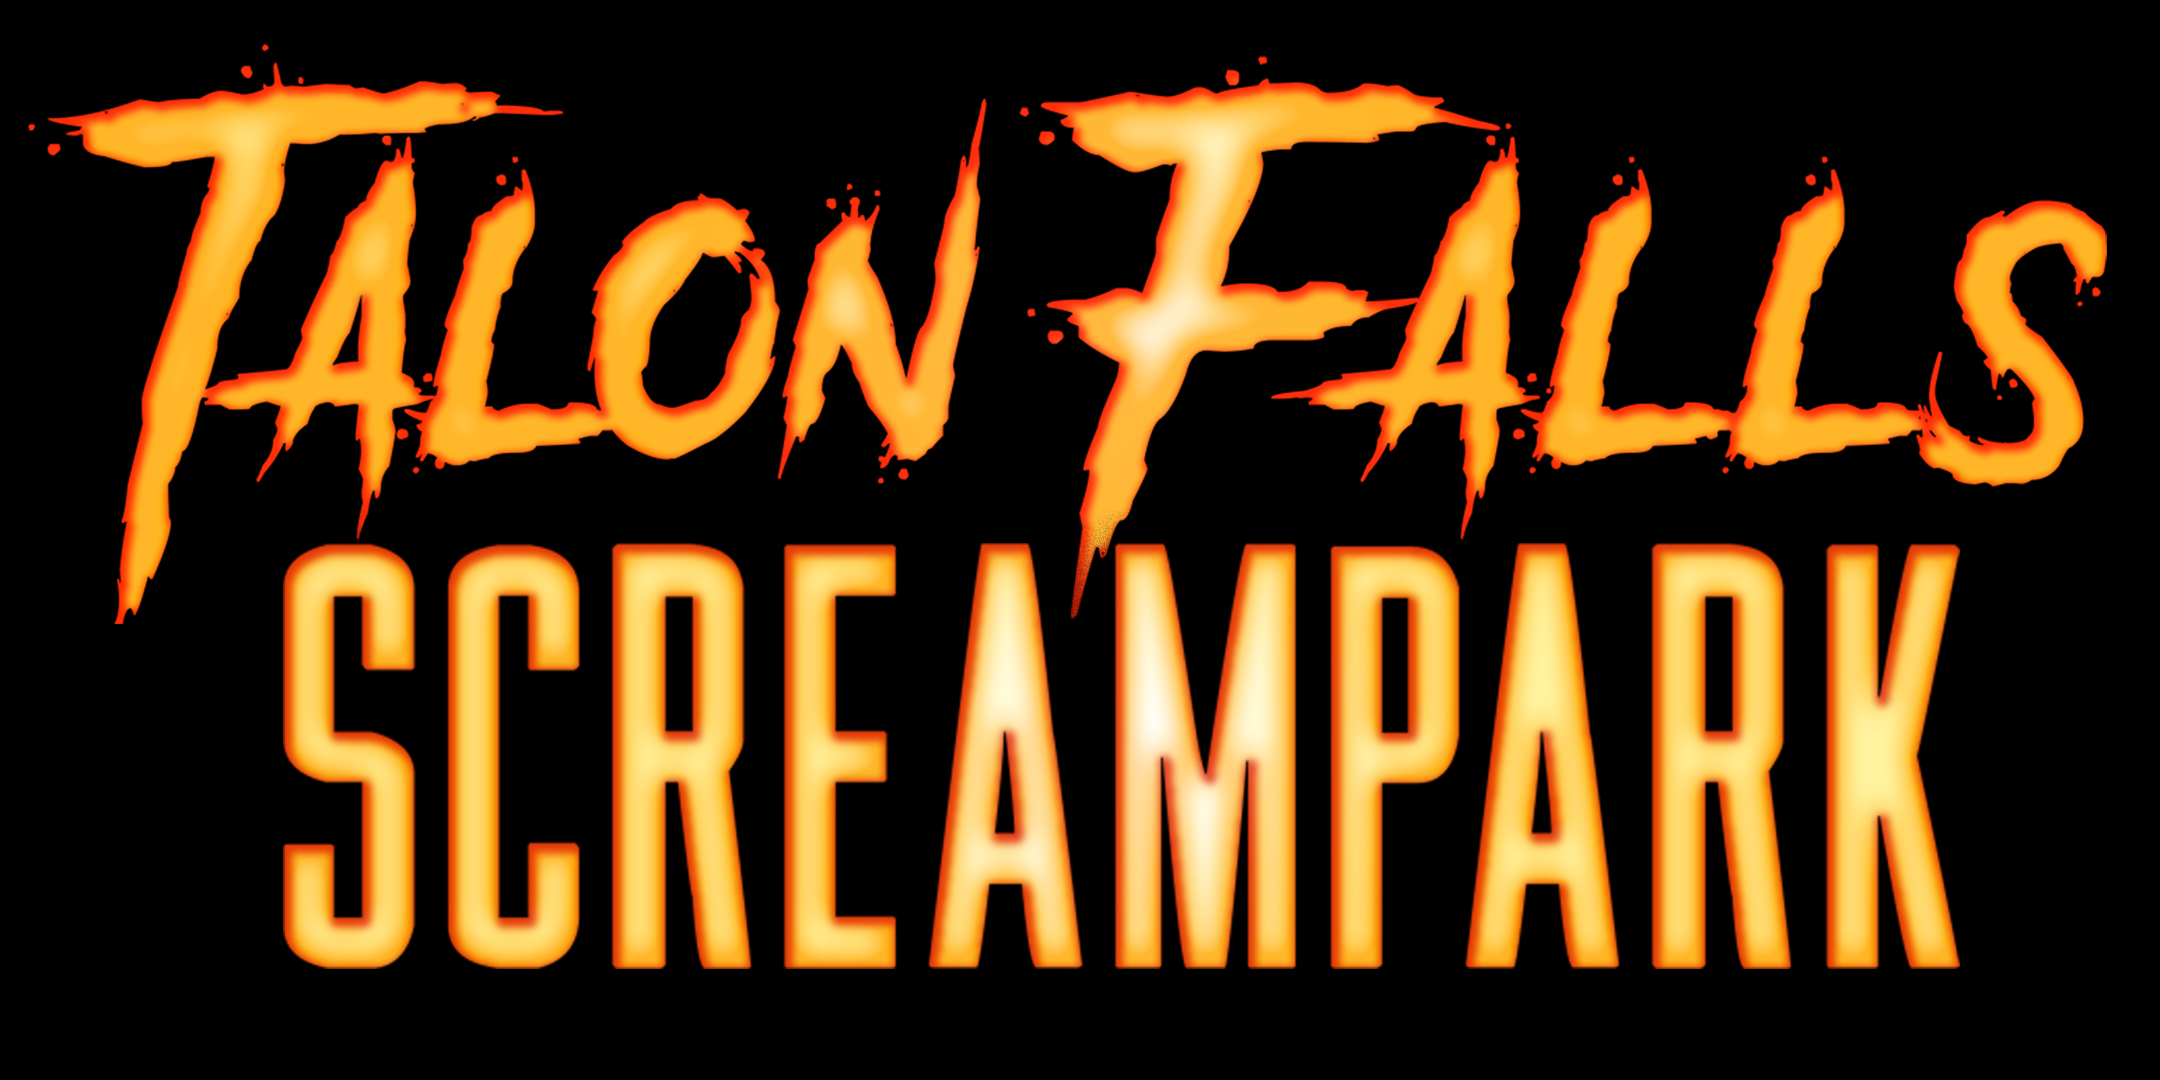 Talon Falls Screampark Join our 2023 Screamteam